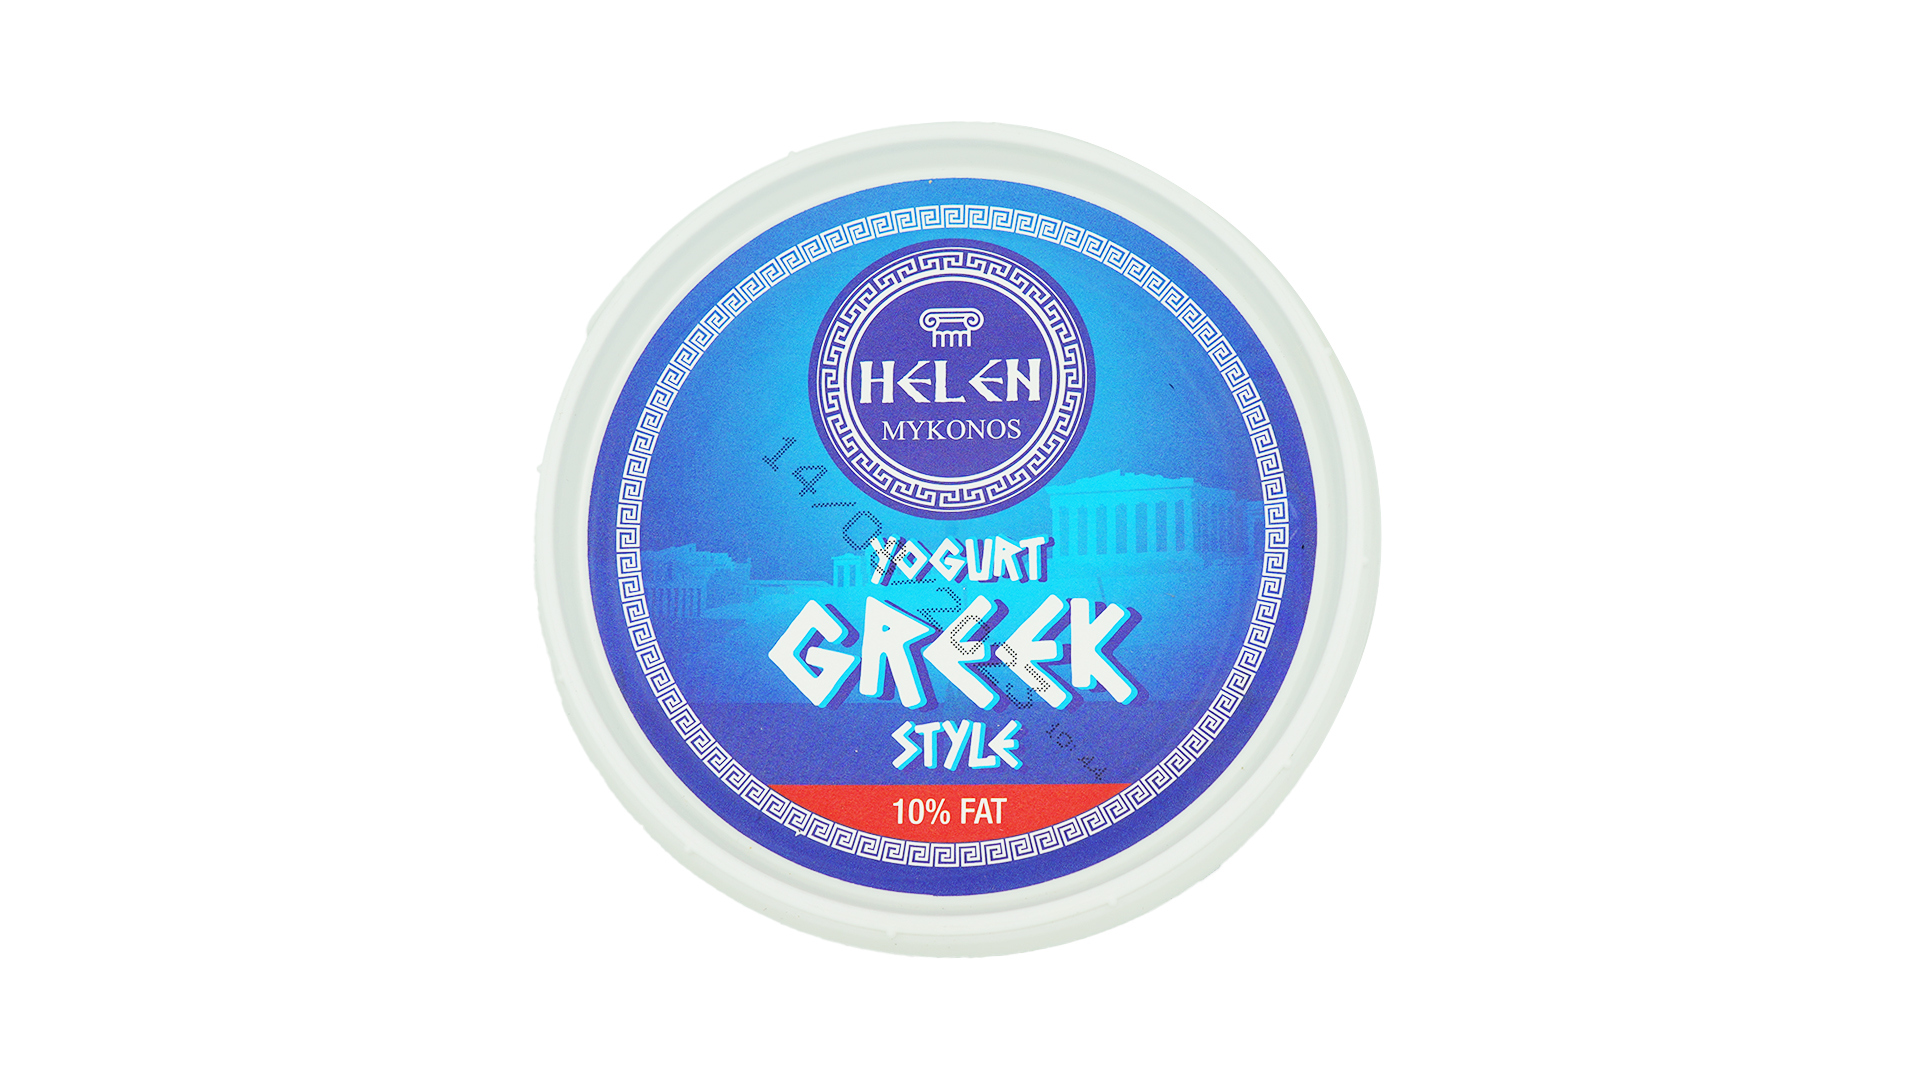 Helen mykonos yogurt greek style 1kg 1